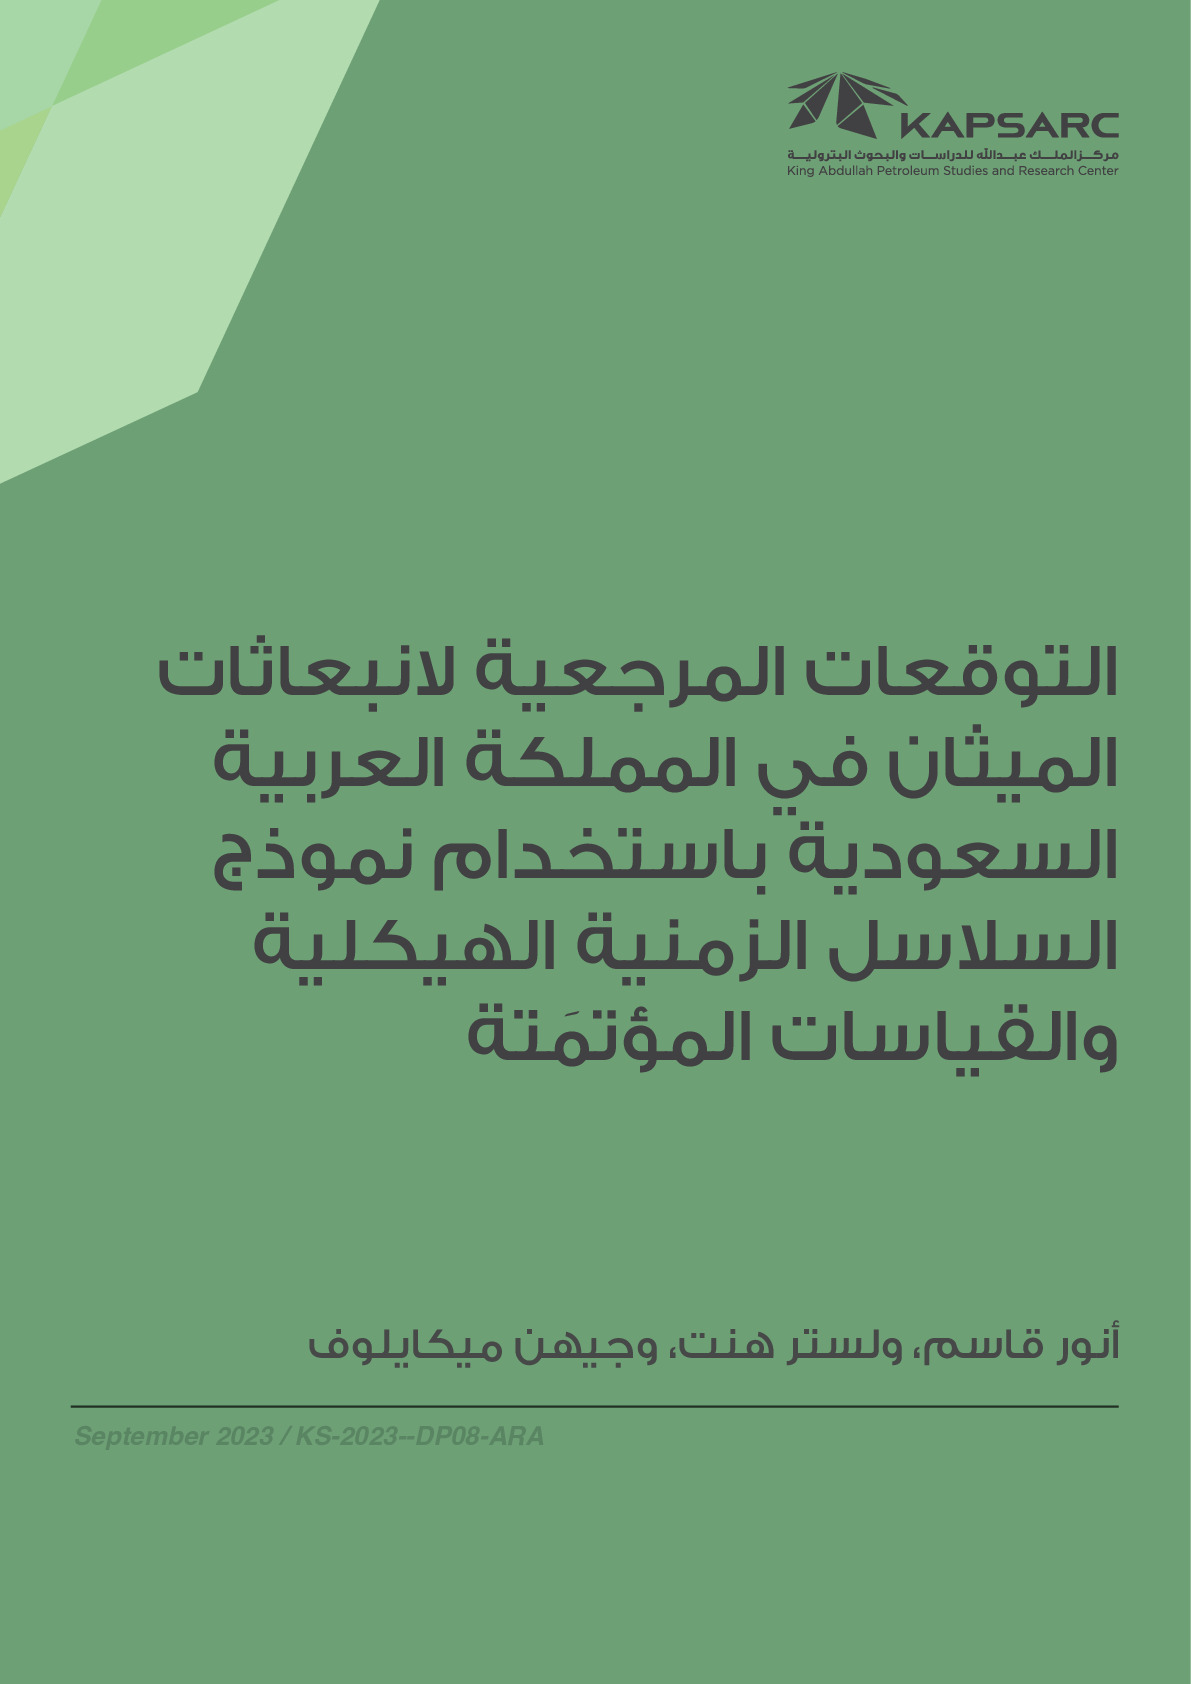 التوقعات المرجعية لانبعاثات الميثان في المملكة العربية السعودية باستخدام نموذج السلاسل الزمنية الهيكلية والقياسات المؤتمَتة